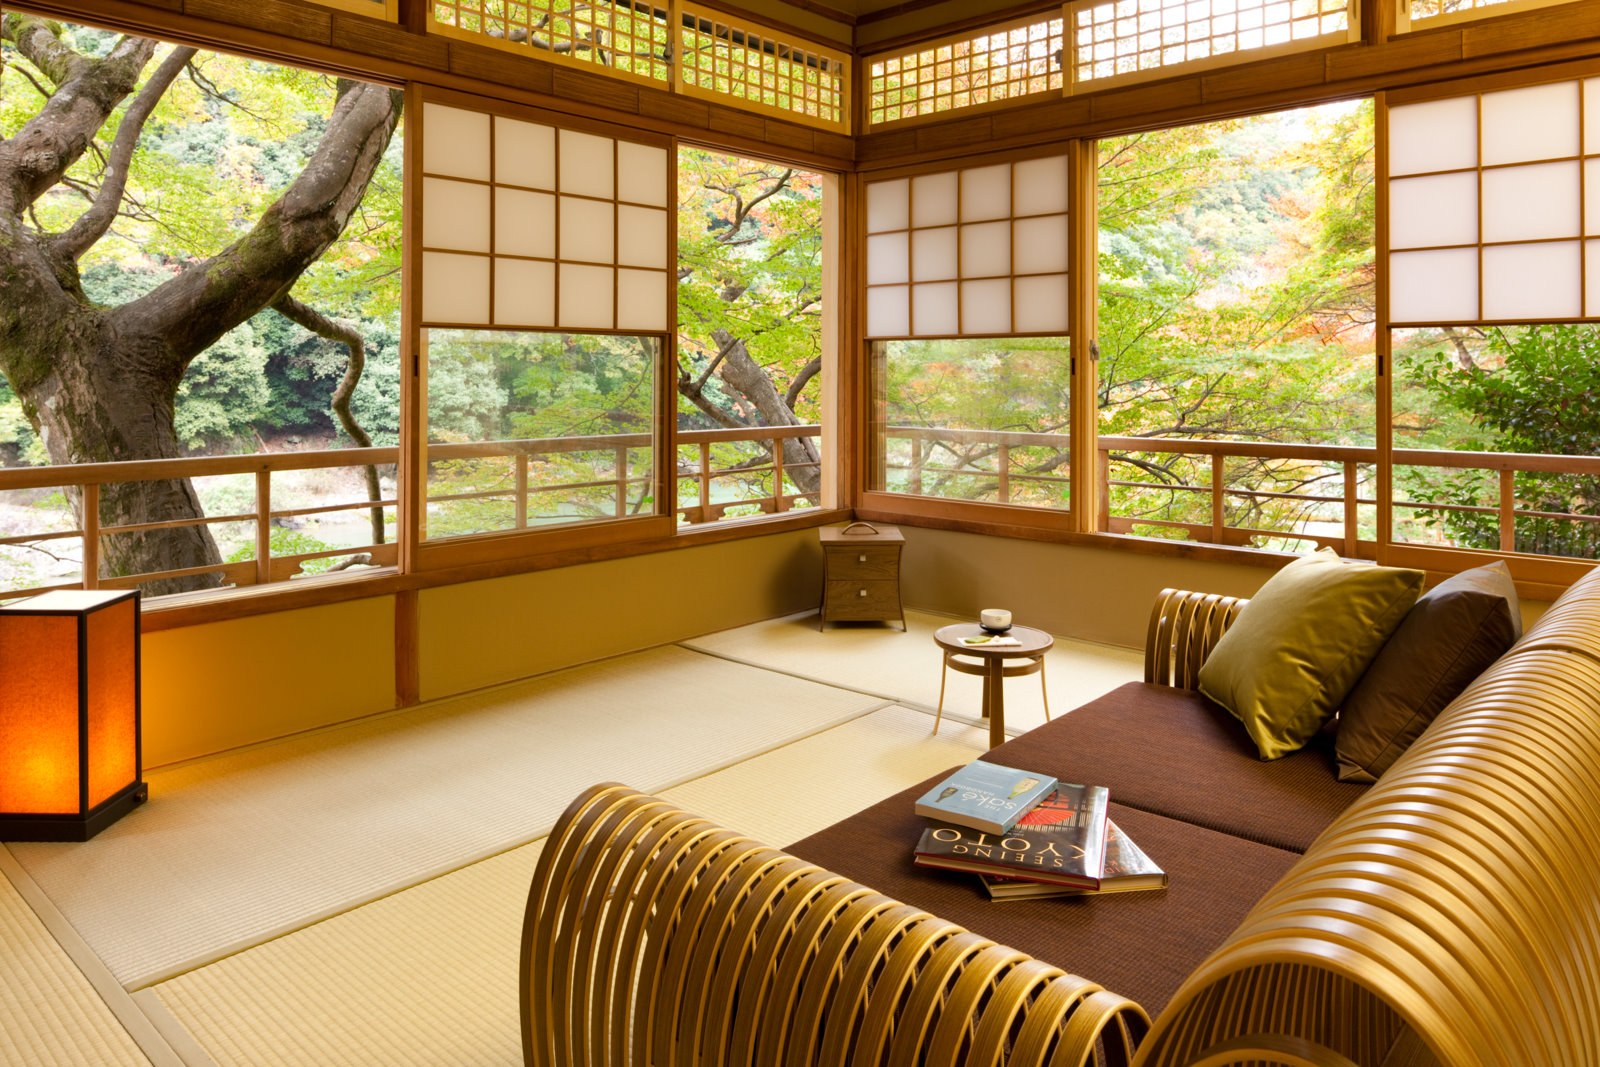 Японские дома купить. Гостиница HOSHINOYA Kyoto,. Минка японский дом интерьер. Японский стиль в интерьере. Традиционный японский интерьер.